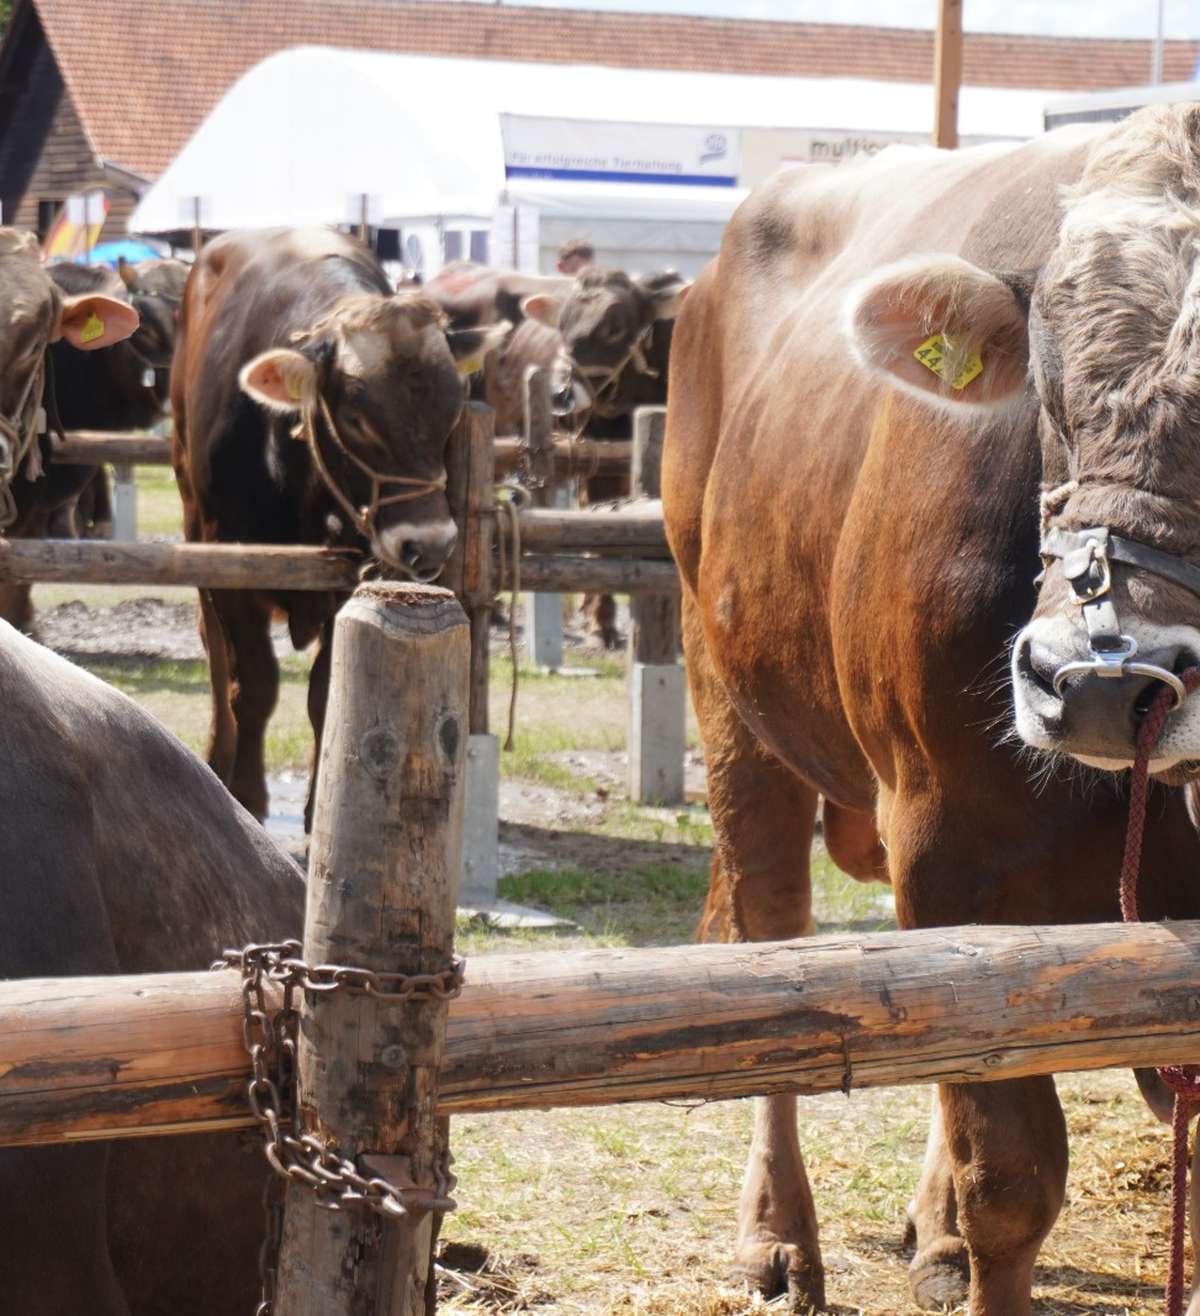 Stierenmarkt lockt 10’000 Besucherinnen nach Zug